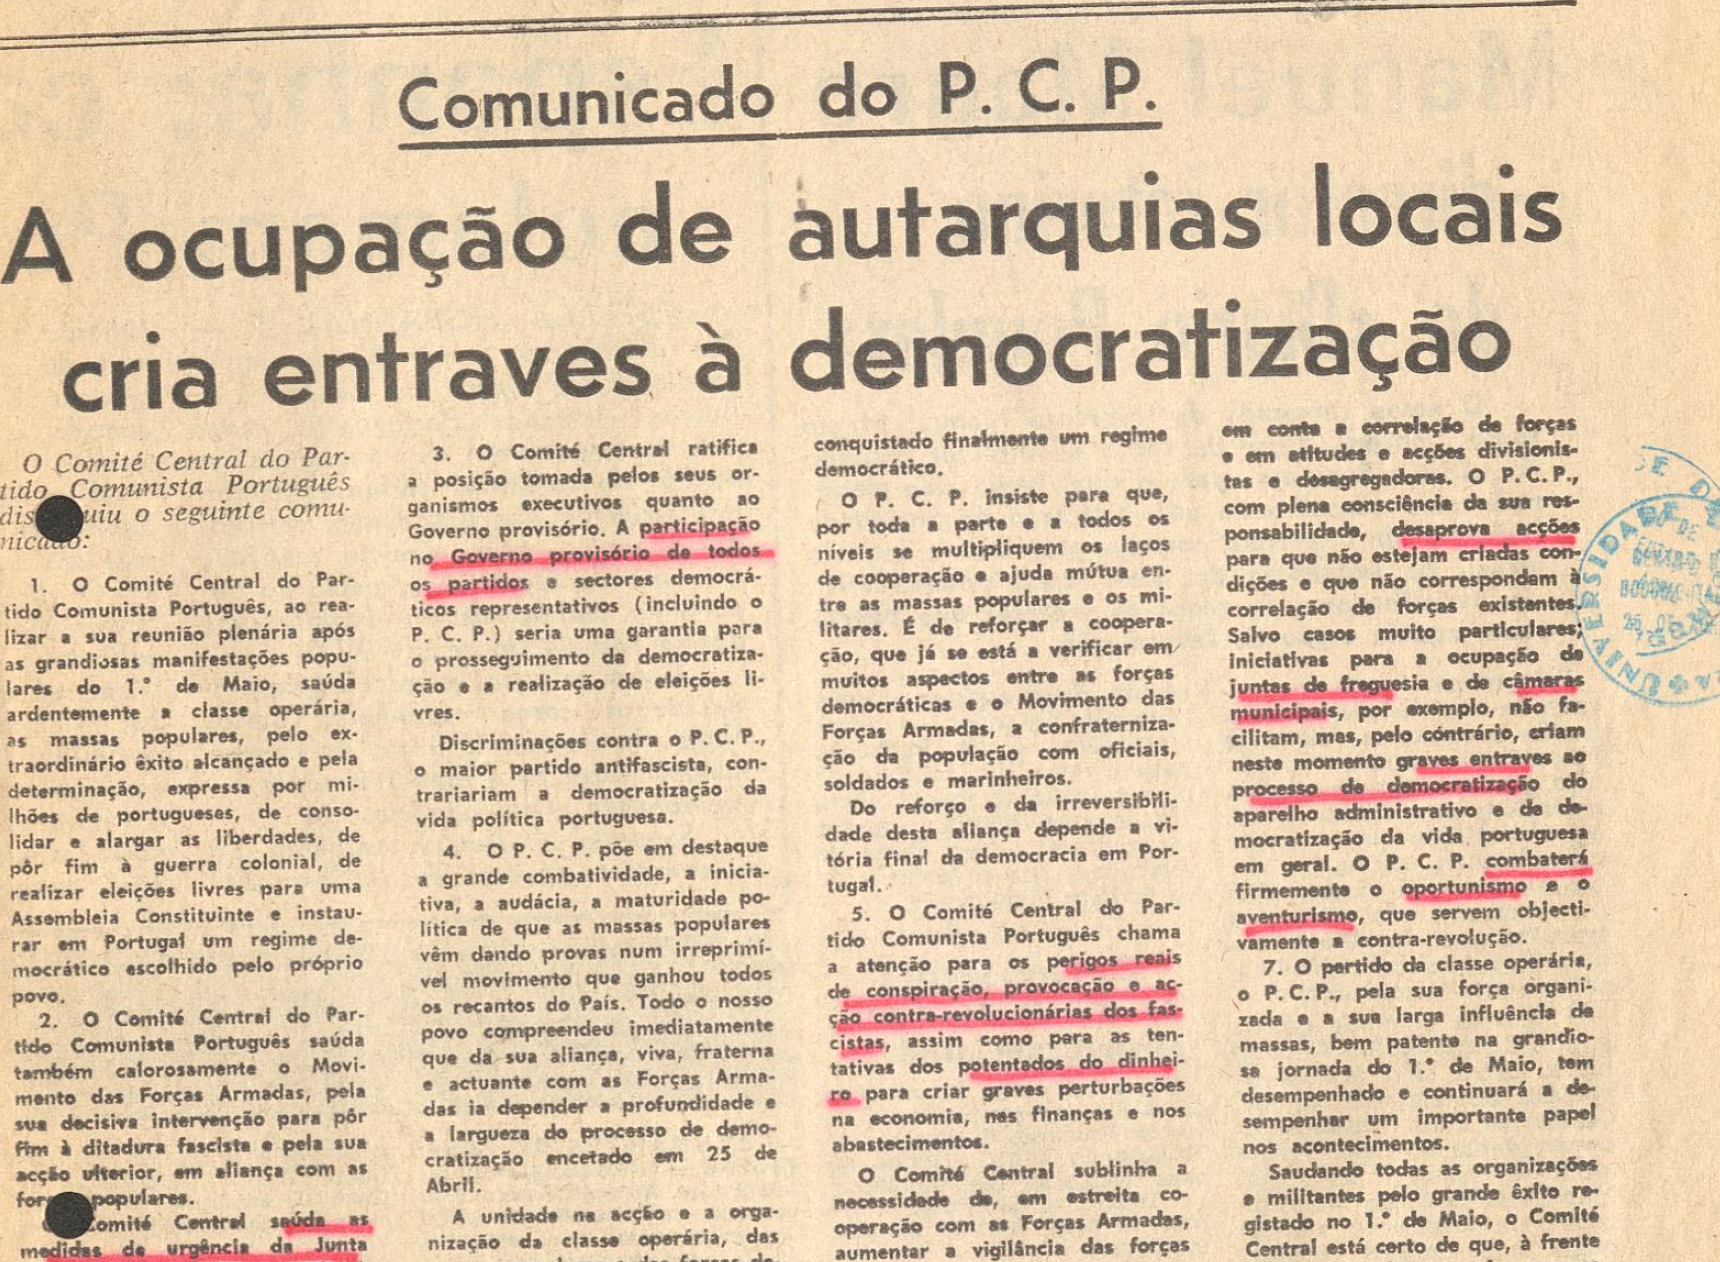 Comunicado PCP: A ocupação de autarquias locais cria entraves a democratização